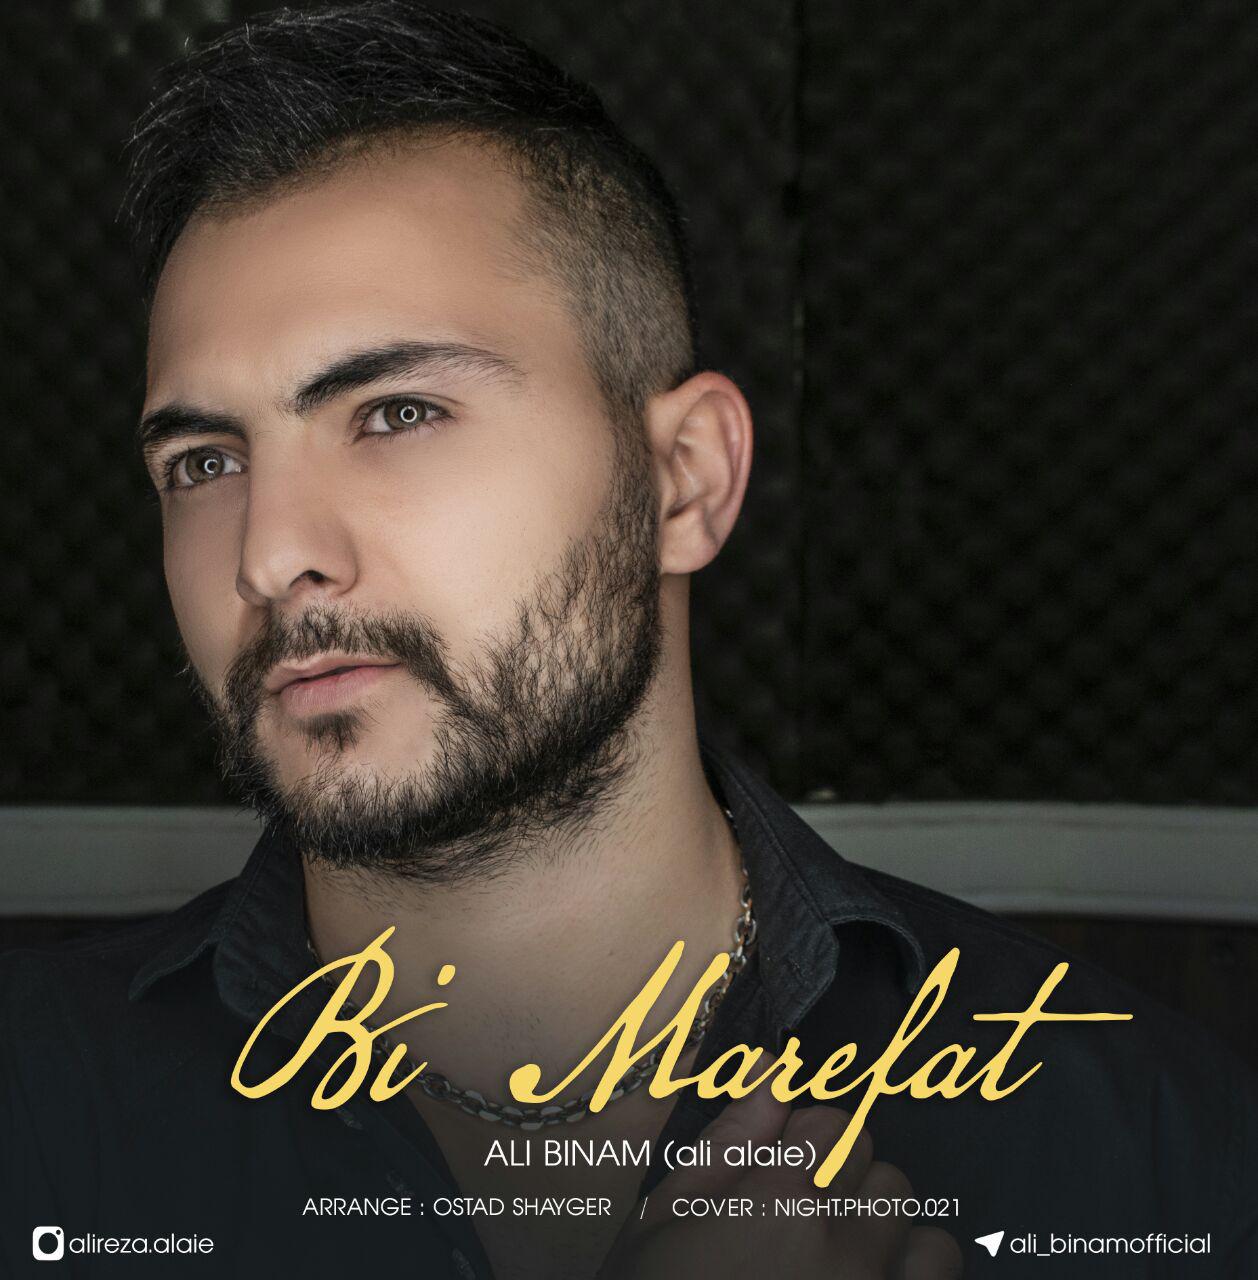 Ali binam  (Ali Alaei)  – Bi Marefat